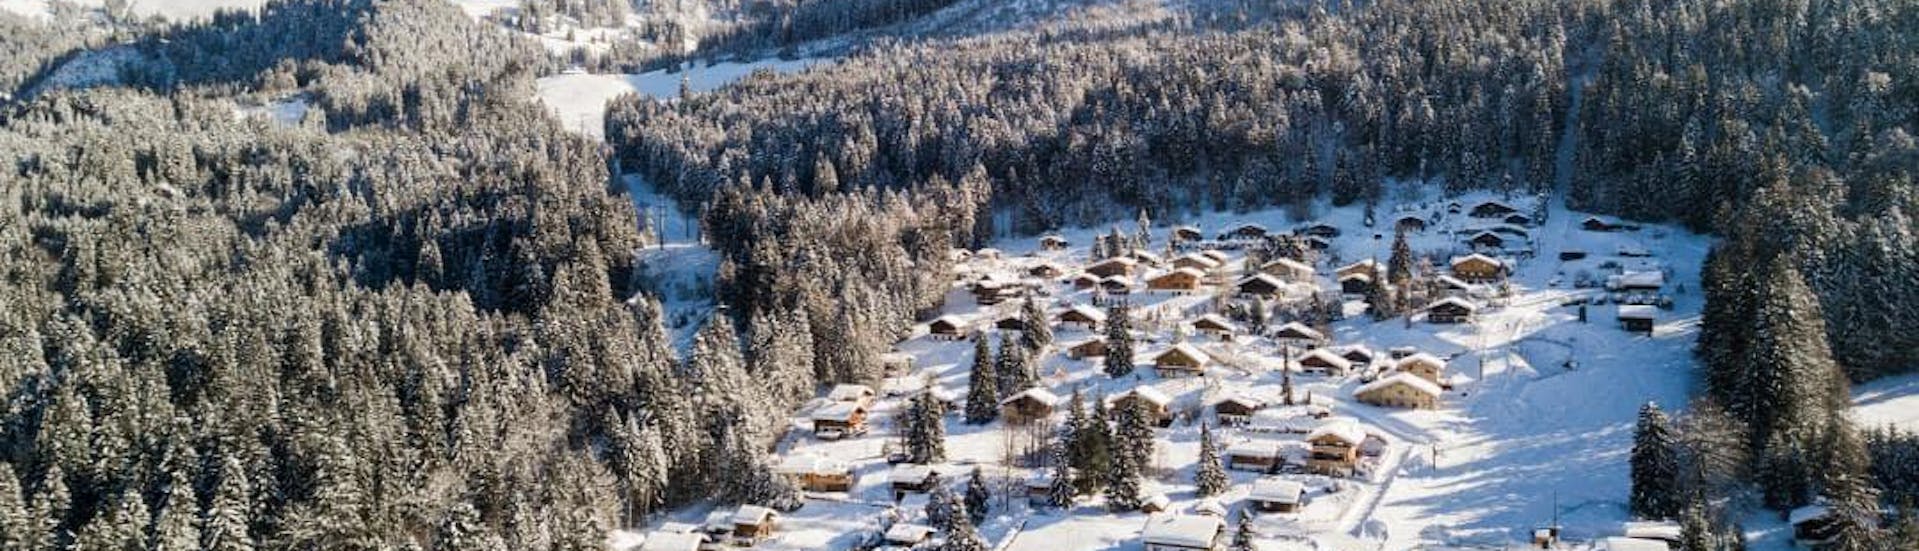 Une vue aérienne des Paccots-Châtel Saint Denis, une destination populaire en Suisse romande où les visiteurs sont invités à réserver des cours de ski dans une des écoles de ski locales.